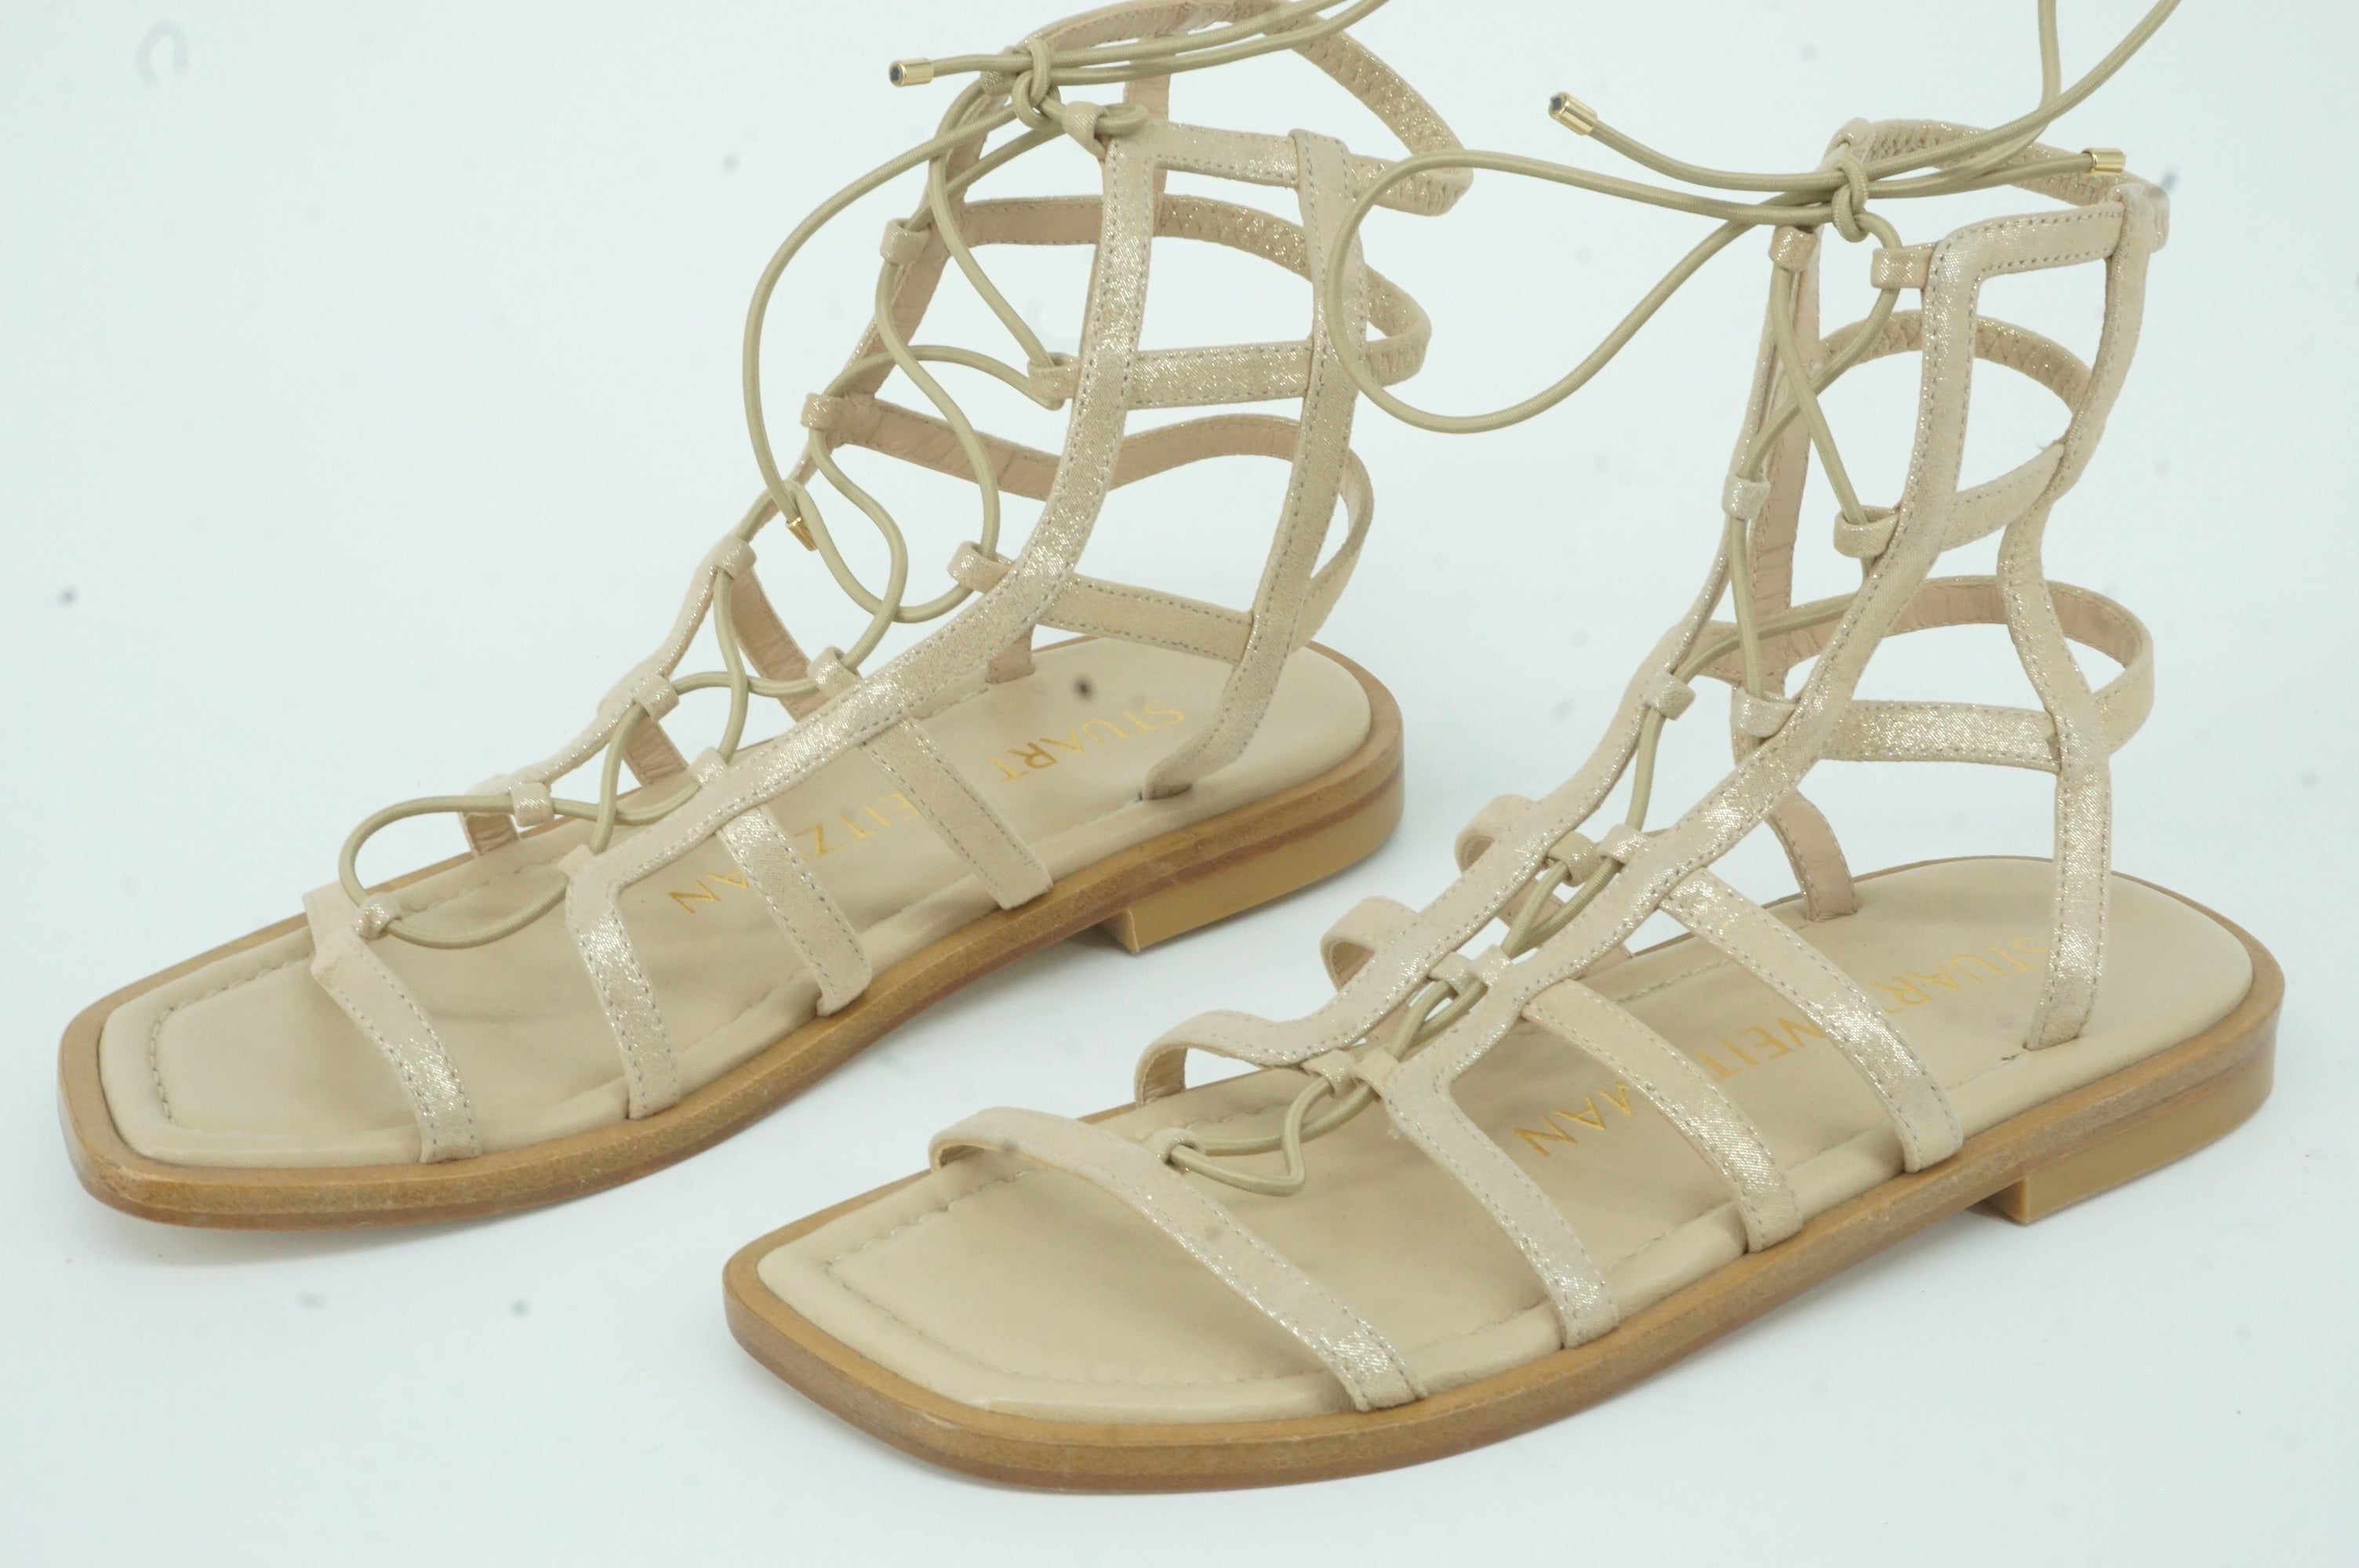 Stuart Weirzman Kora Lace-Up Gladiator Sandal Suede Size 5 $395 New Metallic